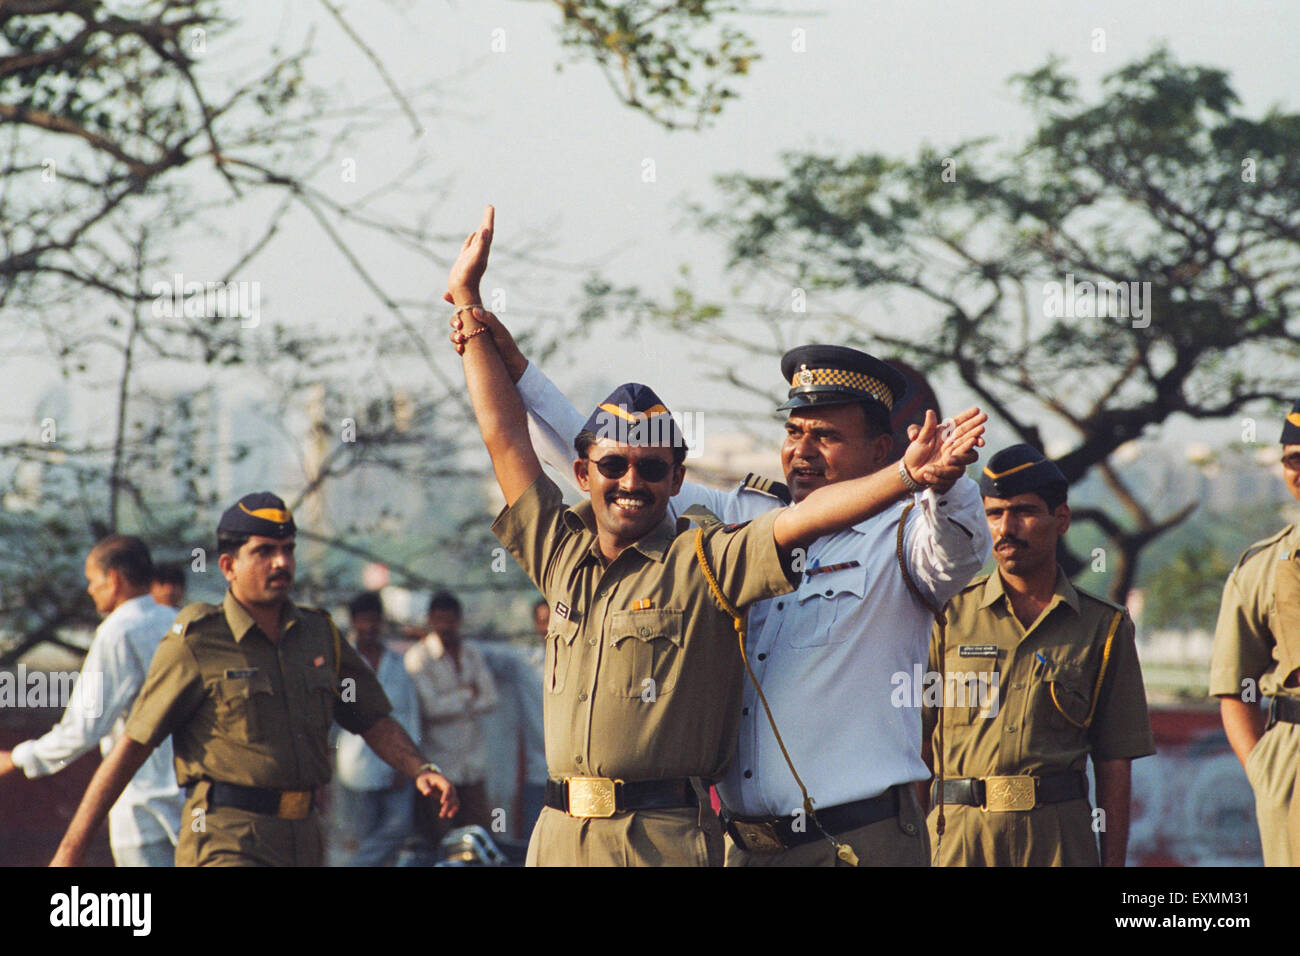 Police traffic control training learning bombay mumbai maharashtra india asia Stock Photo